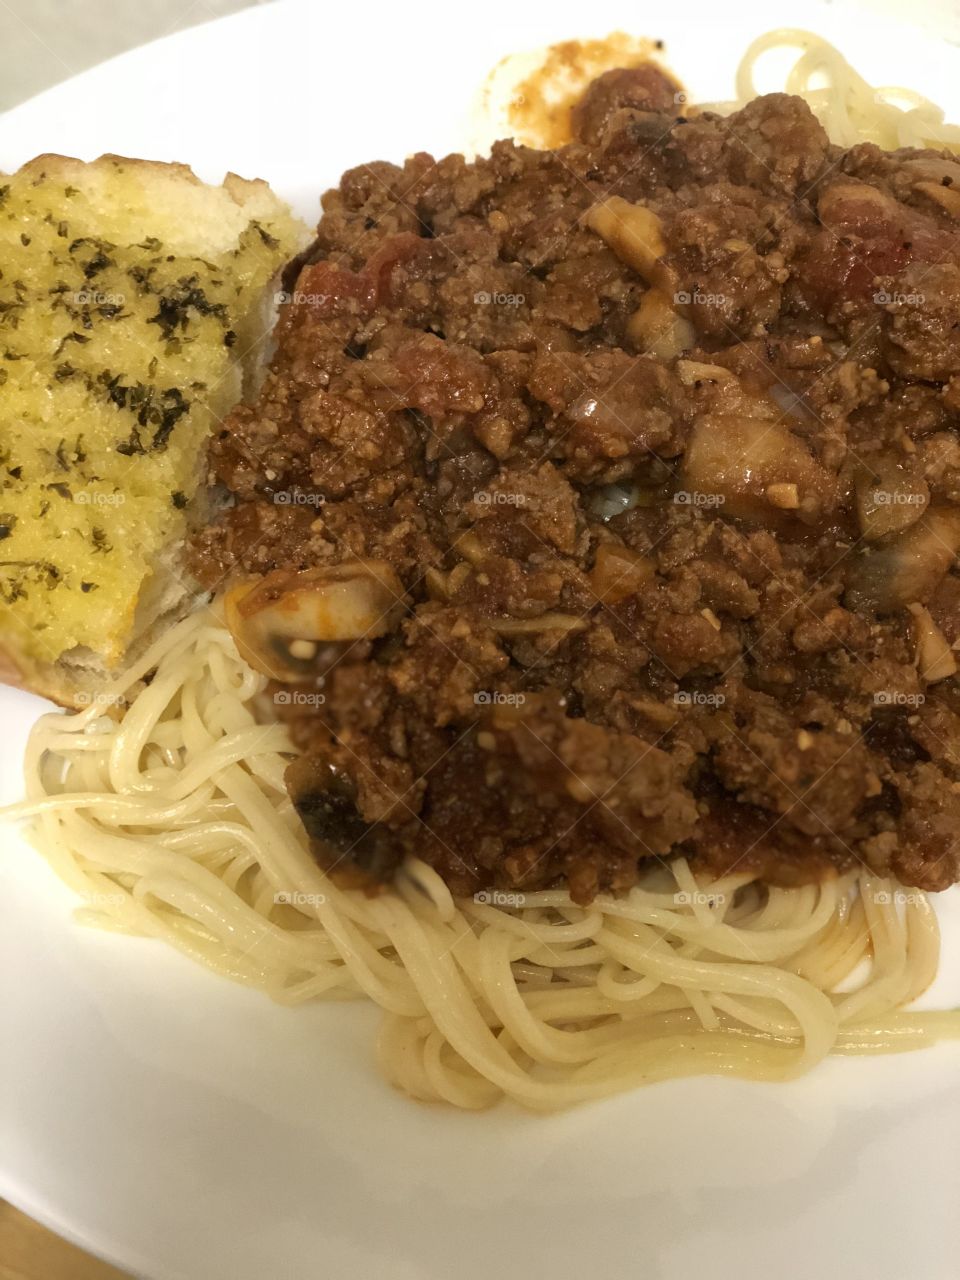 Spaghetti and garlic bread. 